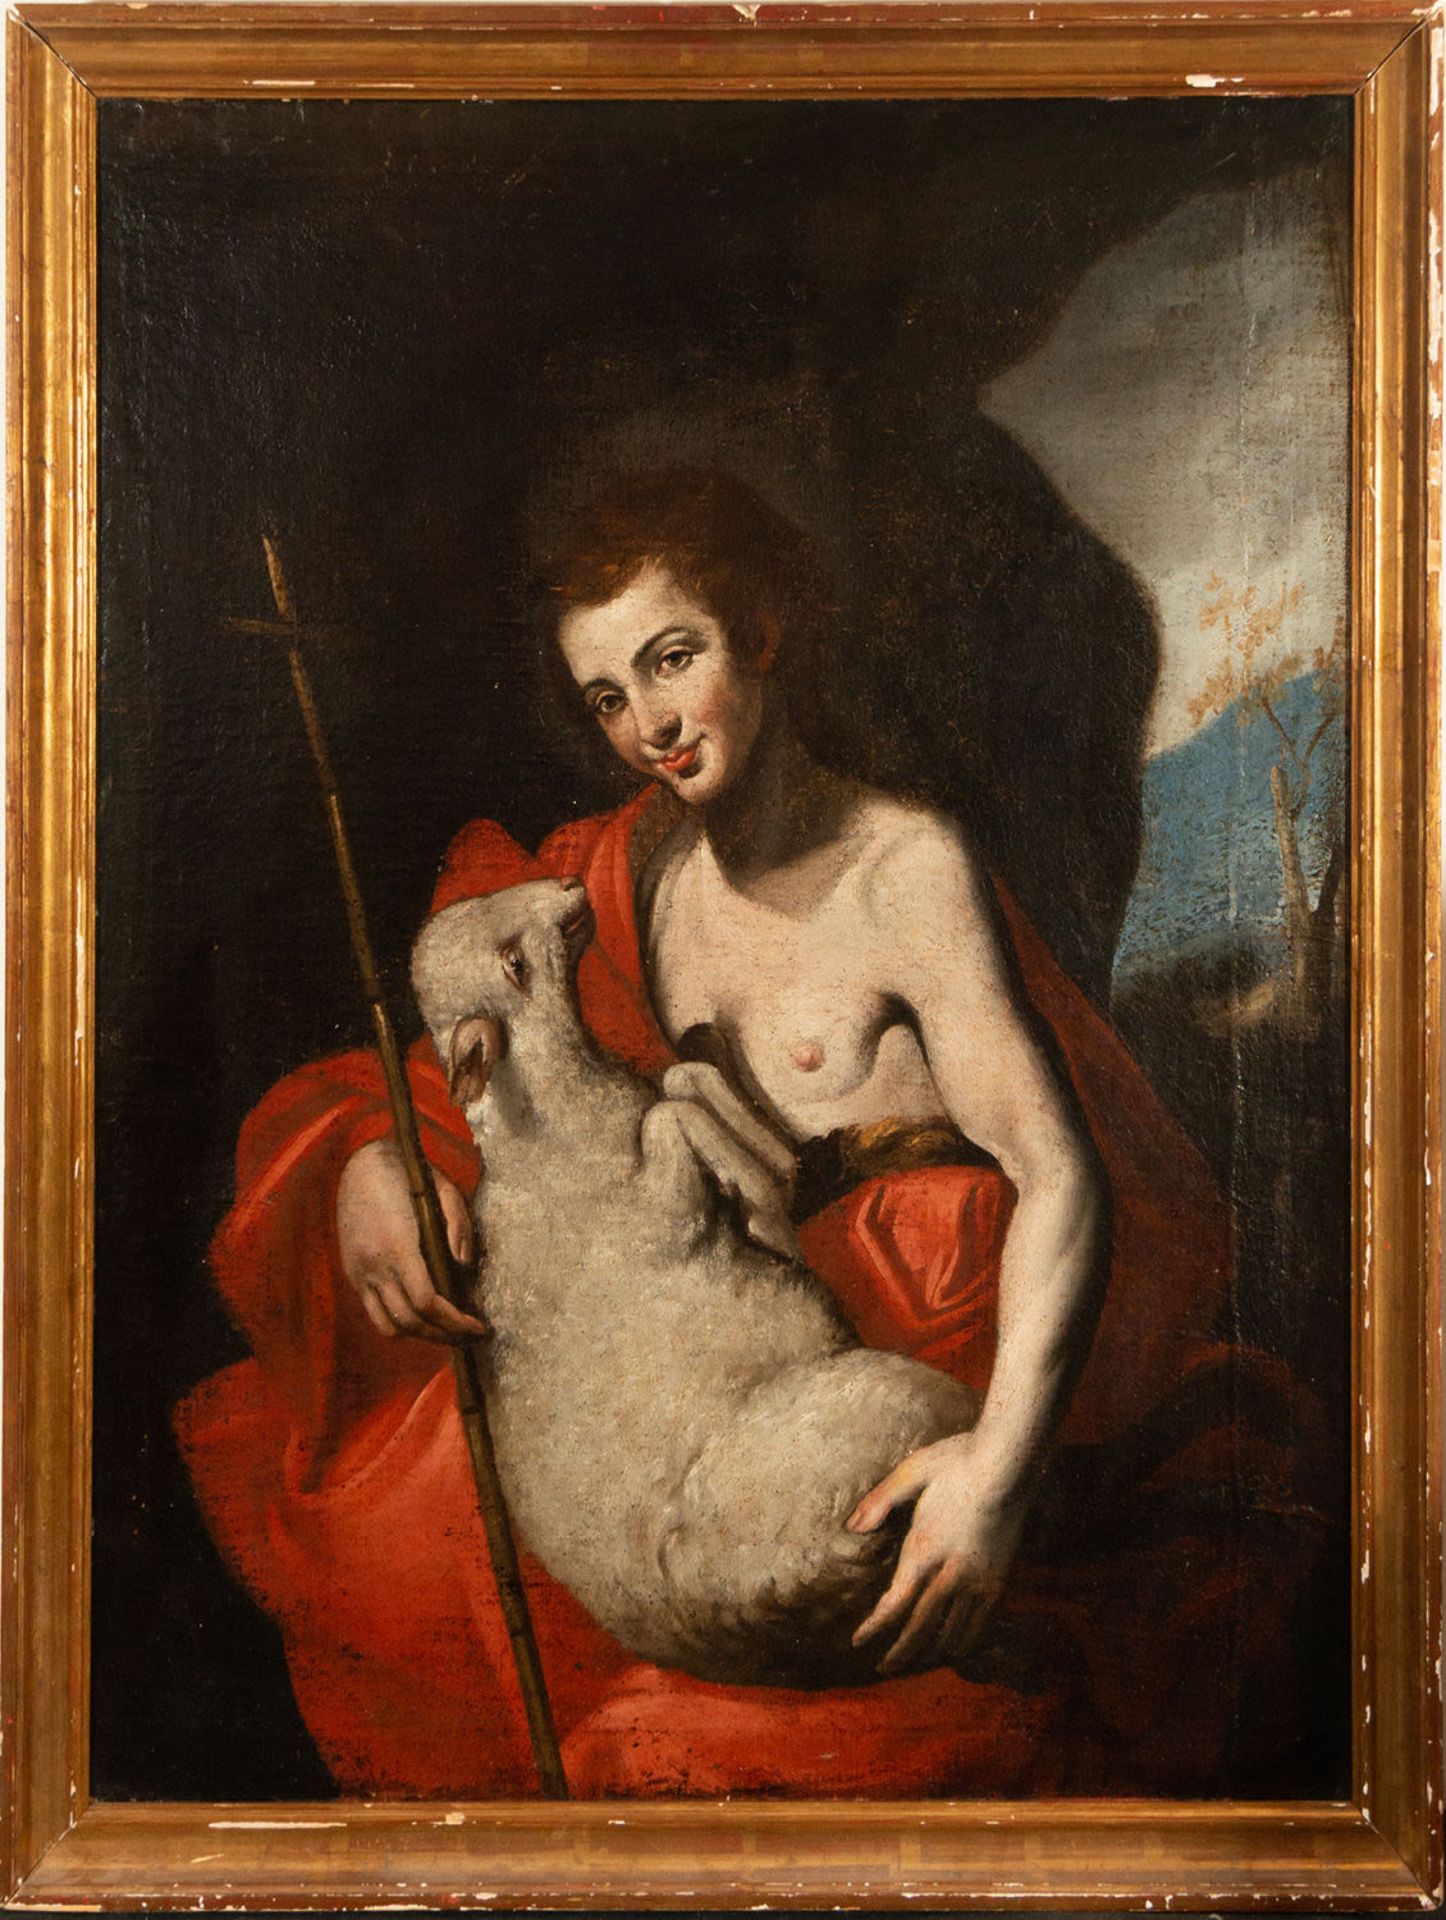 Saint John the Baptist, 17th century Italian school, following models by José de Ribera